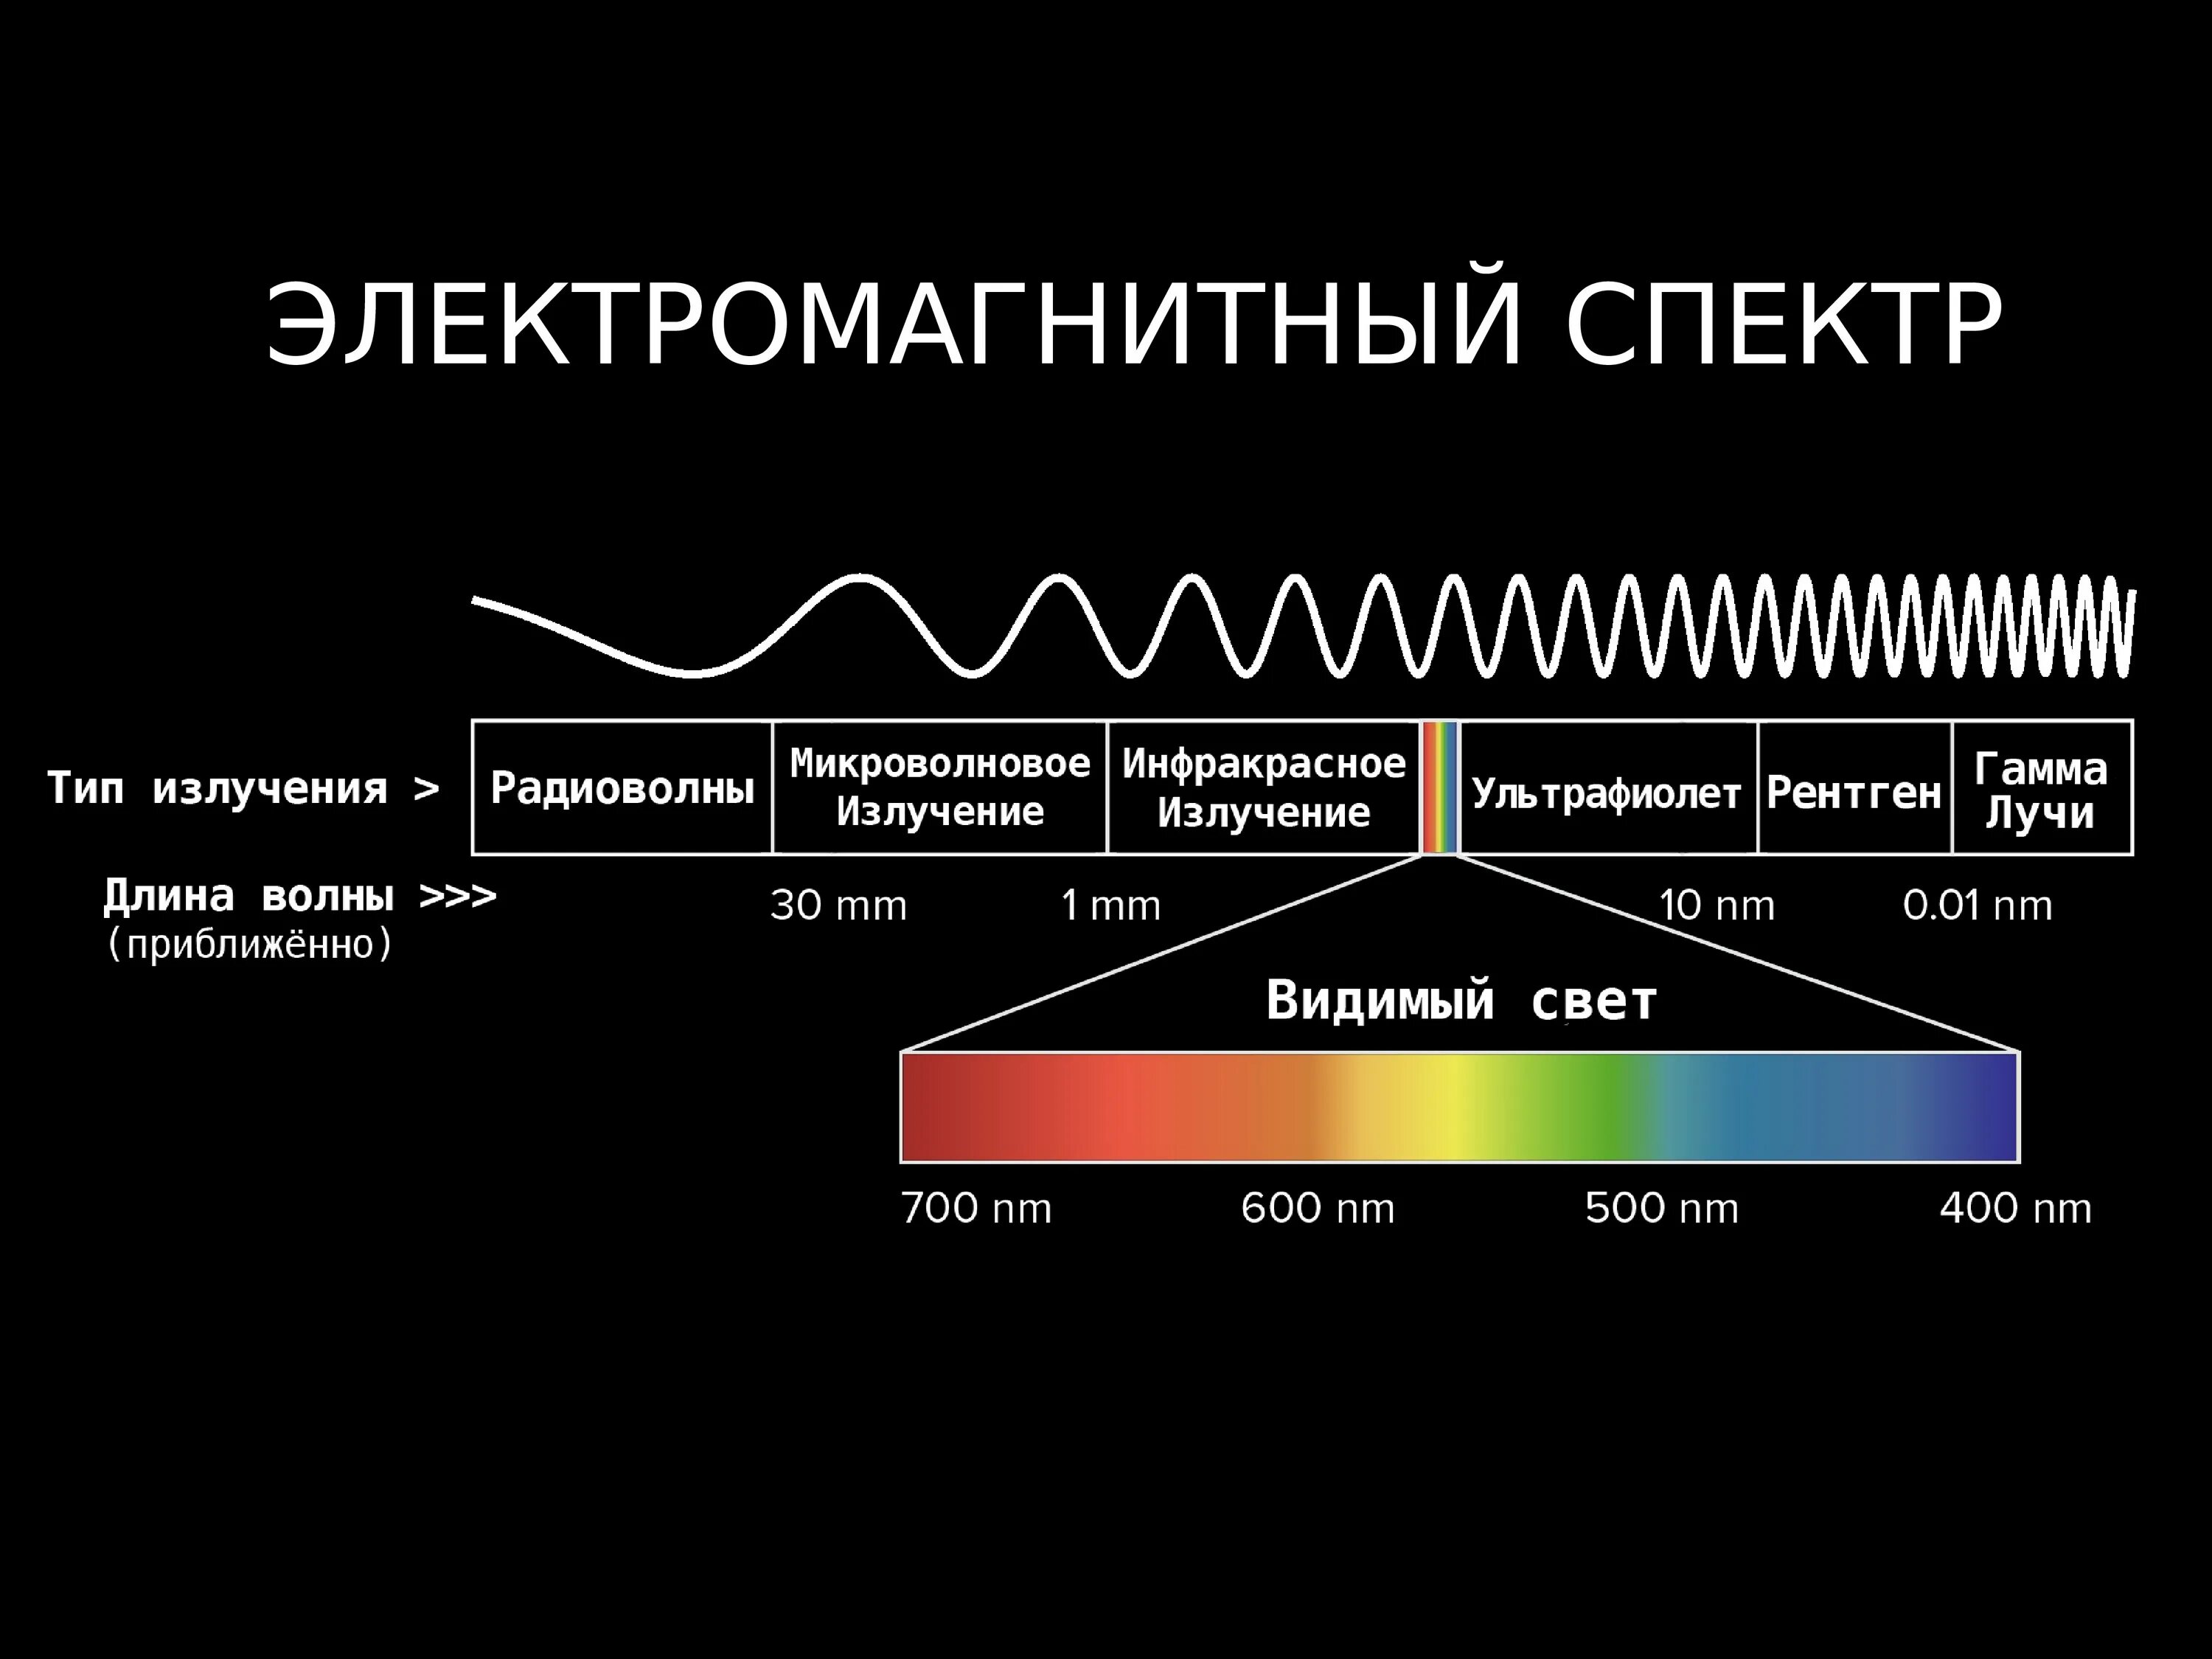 Большую частоту излучения имеет. Диапазоны спектра электромагнитного излучения. Электромагнитное излучение спектр электромагнитного излучения. Спектр длин волн электромагнитных излучений. Длина волны электромагнитного излучения.